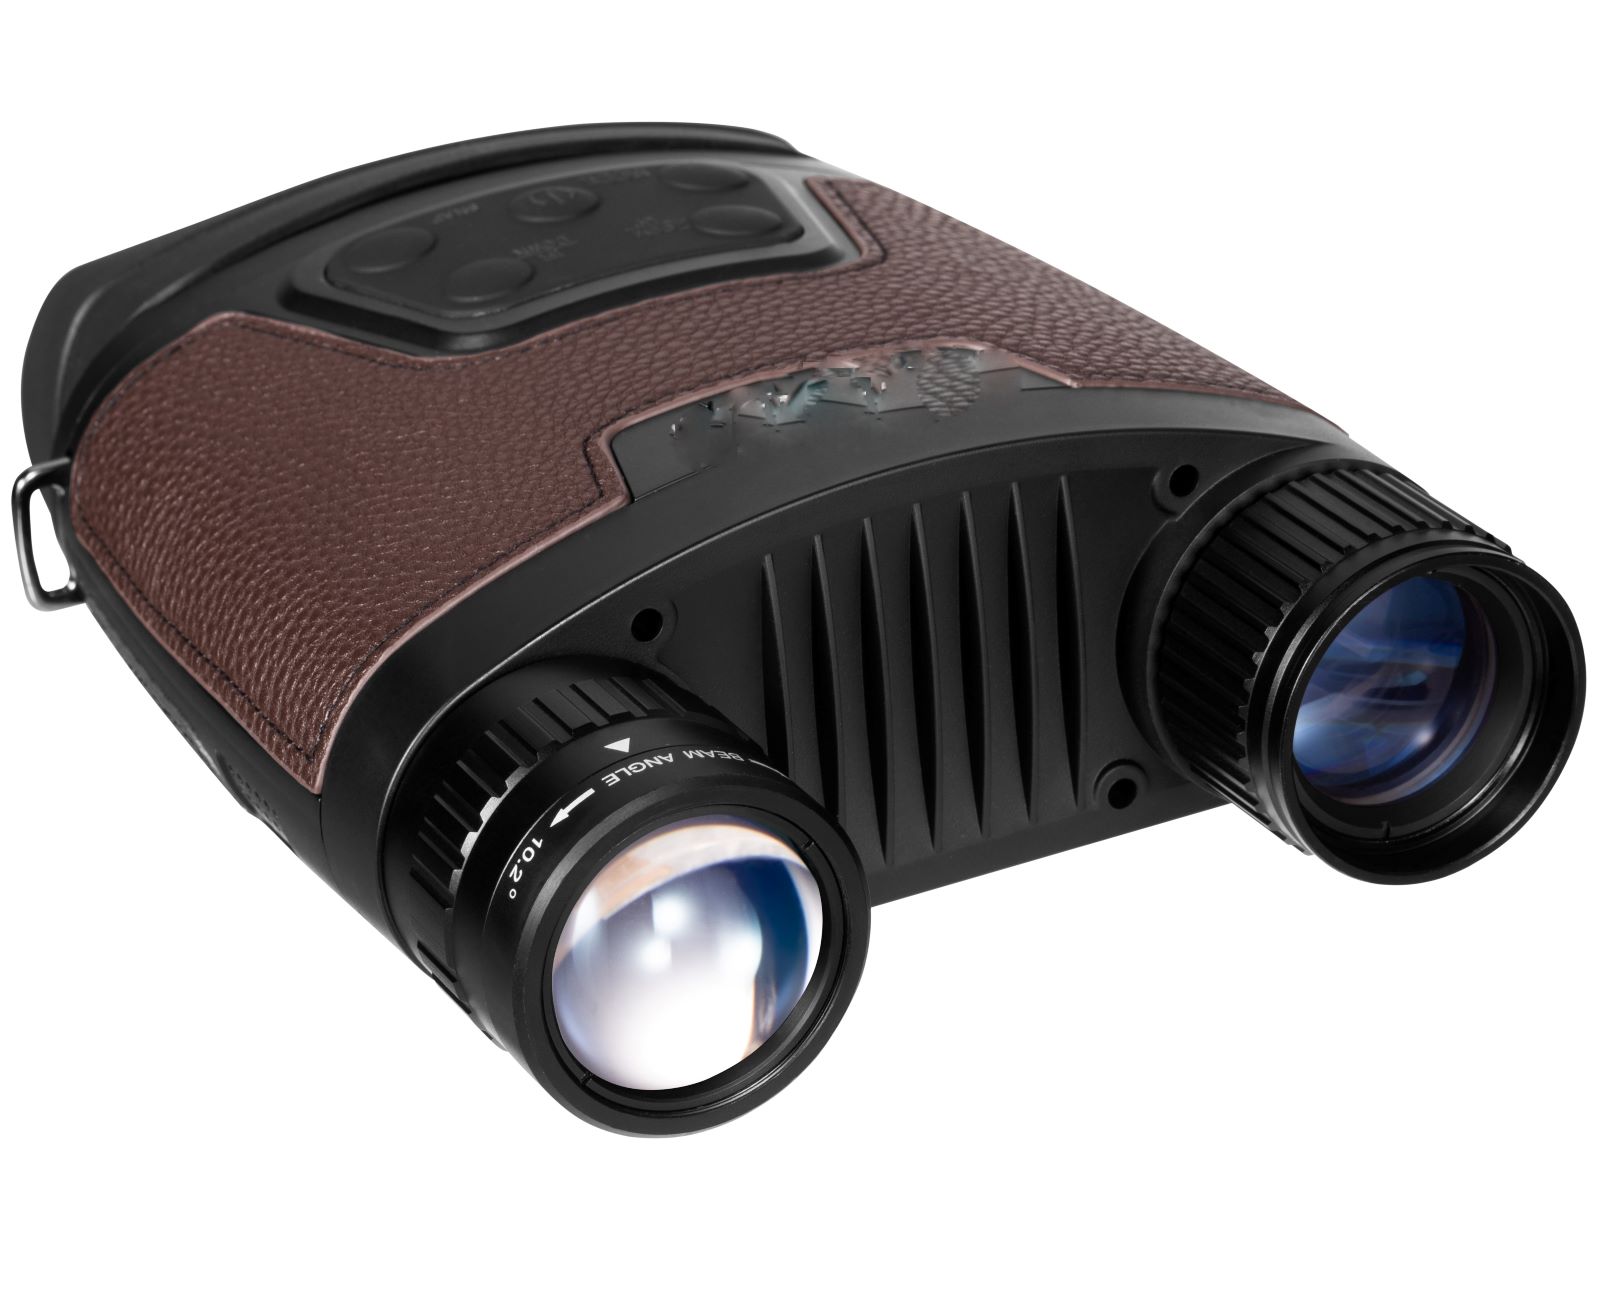 380米有效红外照明距离、1080P高清、高灵敏度和大动态范围图像传感芯片，高密